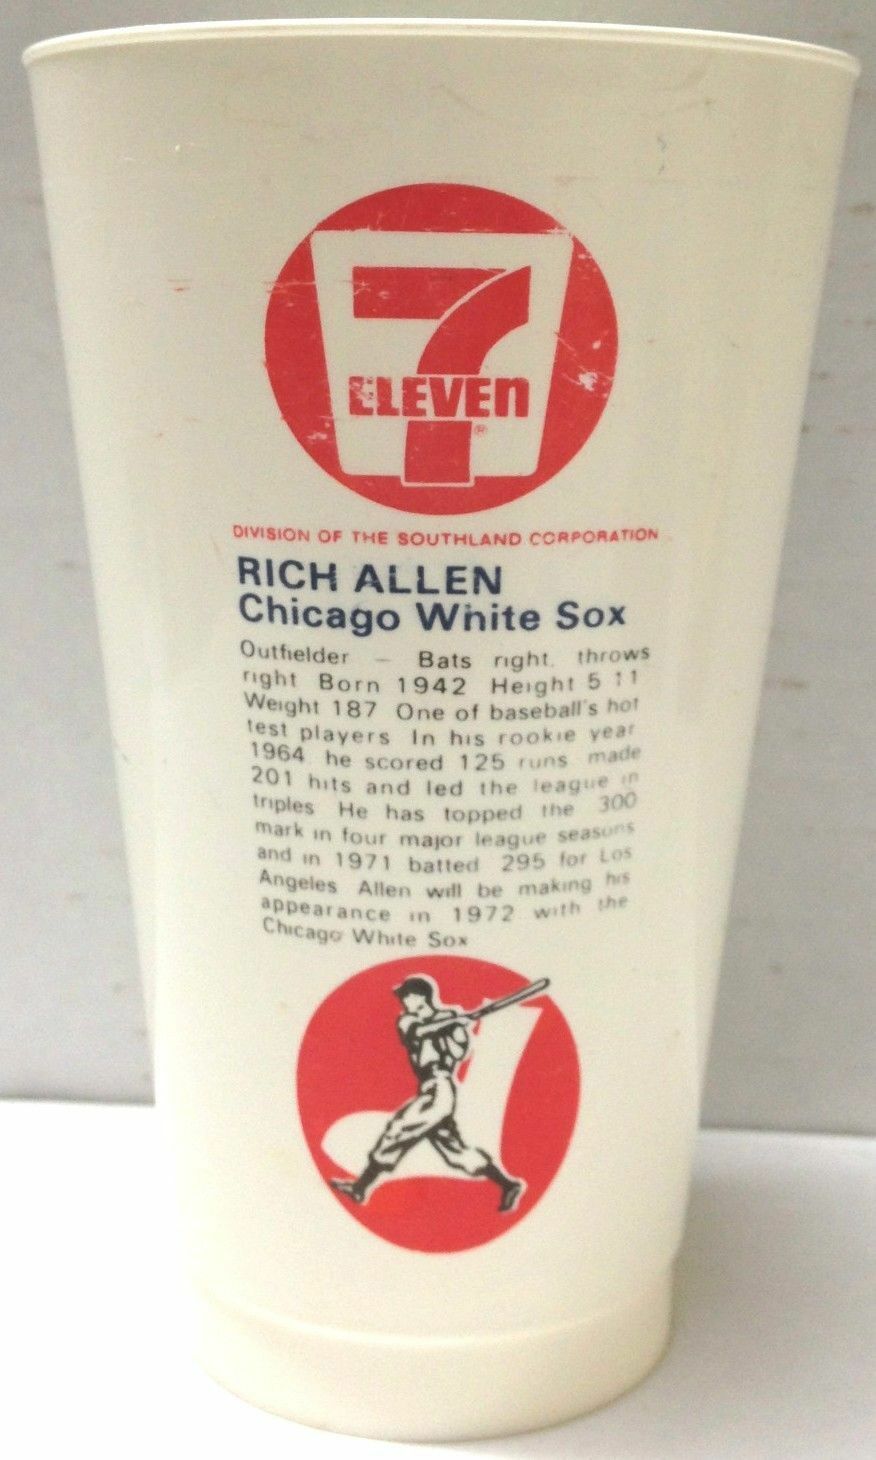 1970's RICH ALLEN chicago white sox 7ELEVEN souvenir cup vintage MLB Image 2